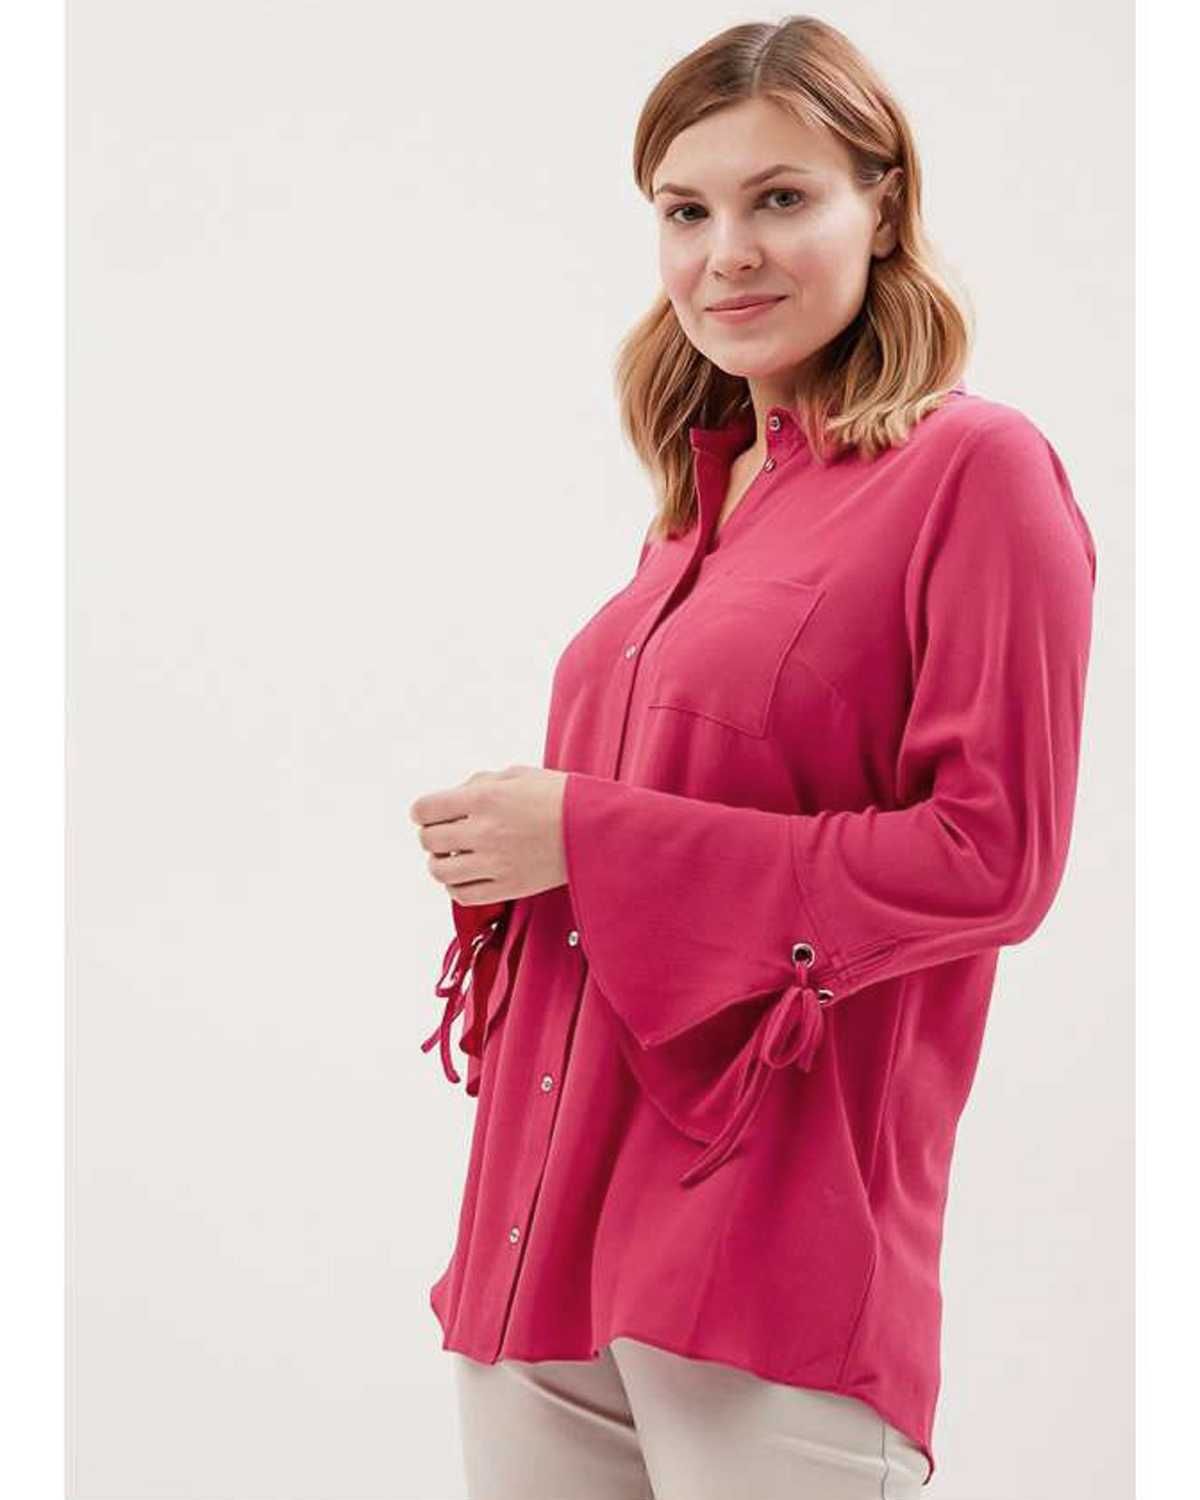 Блуза EVANS, размер 44 EU (16 UK). Сорочка жіноча.